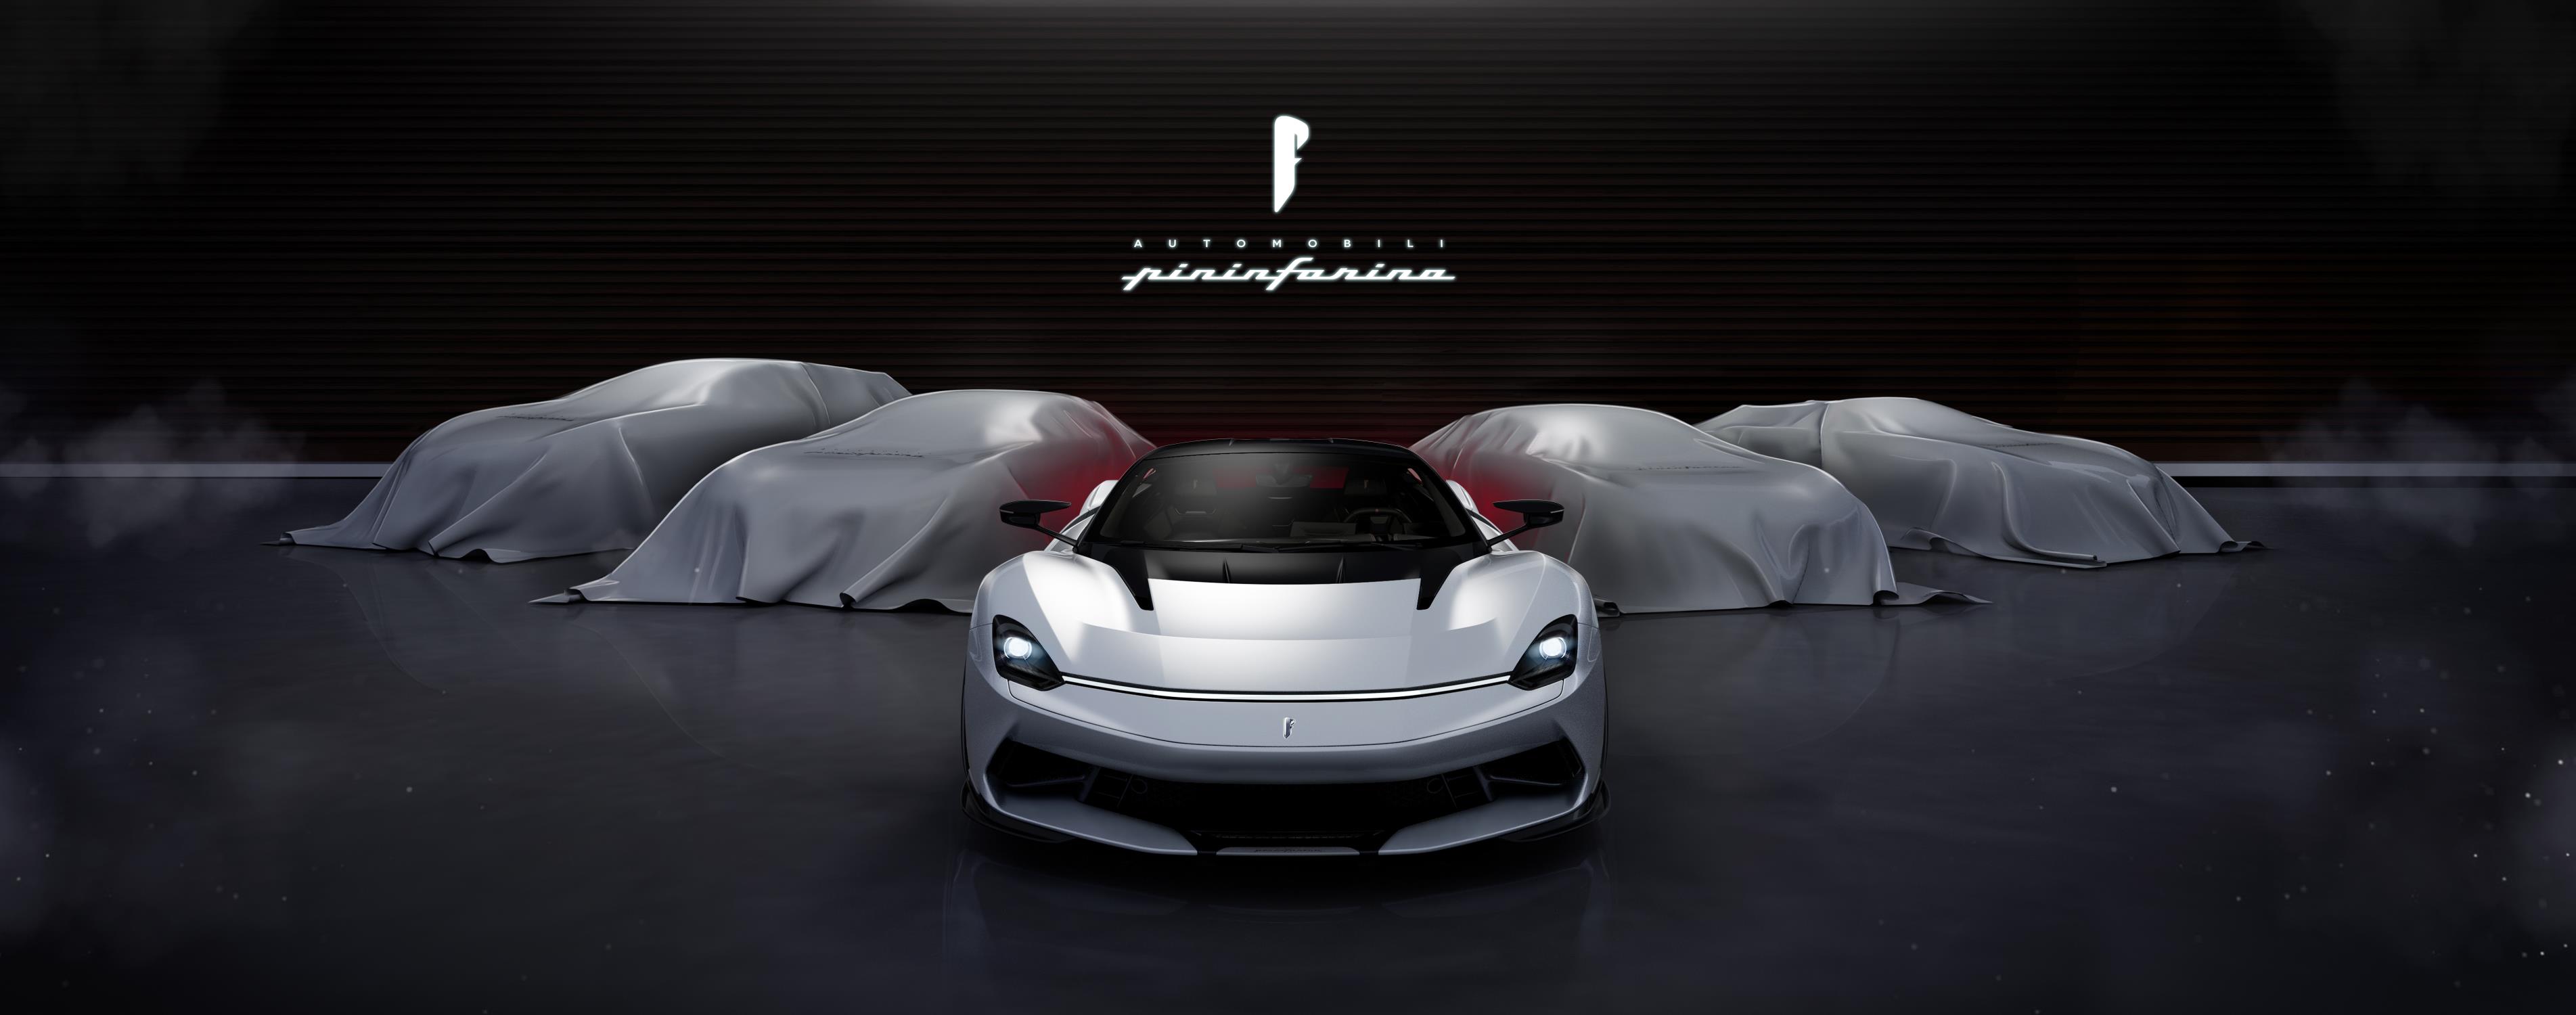 Novo line-up da Pininfarina será composto por cinco carros elétricos